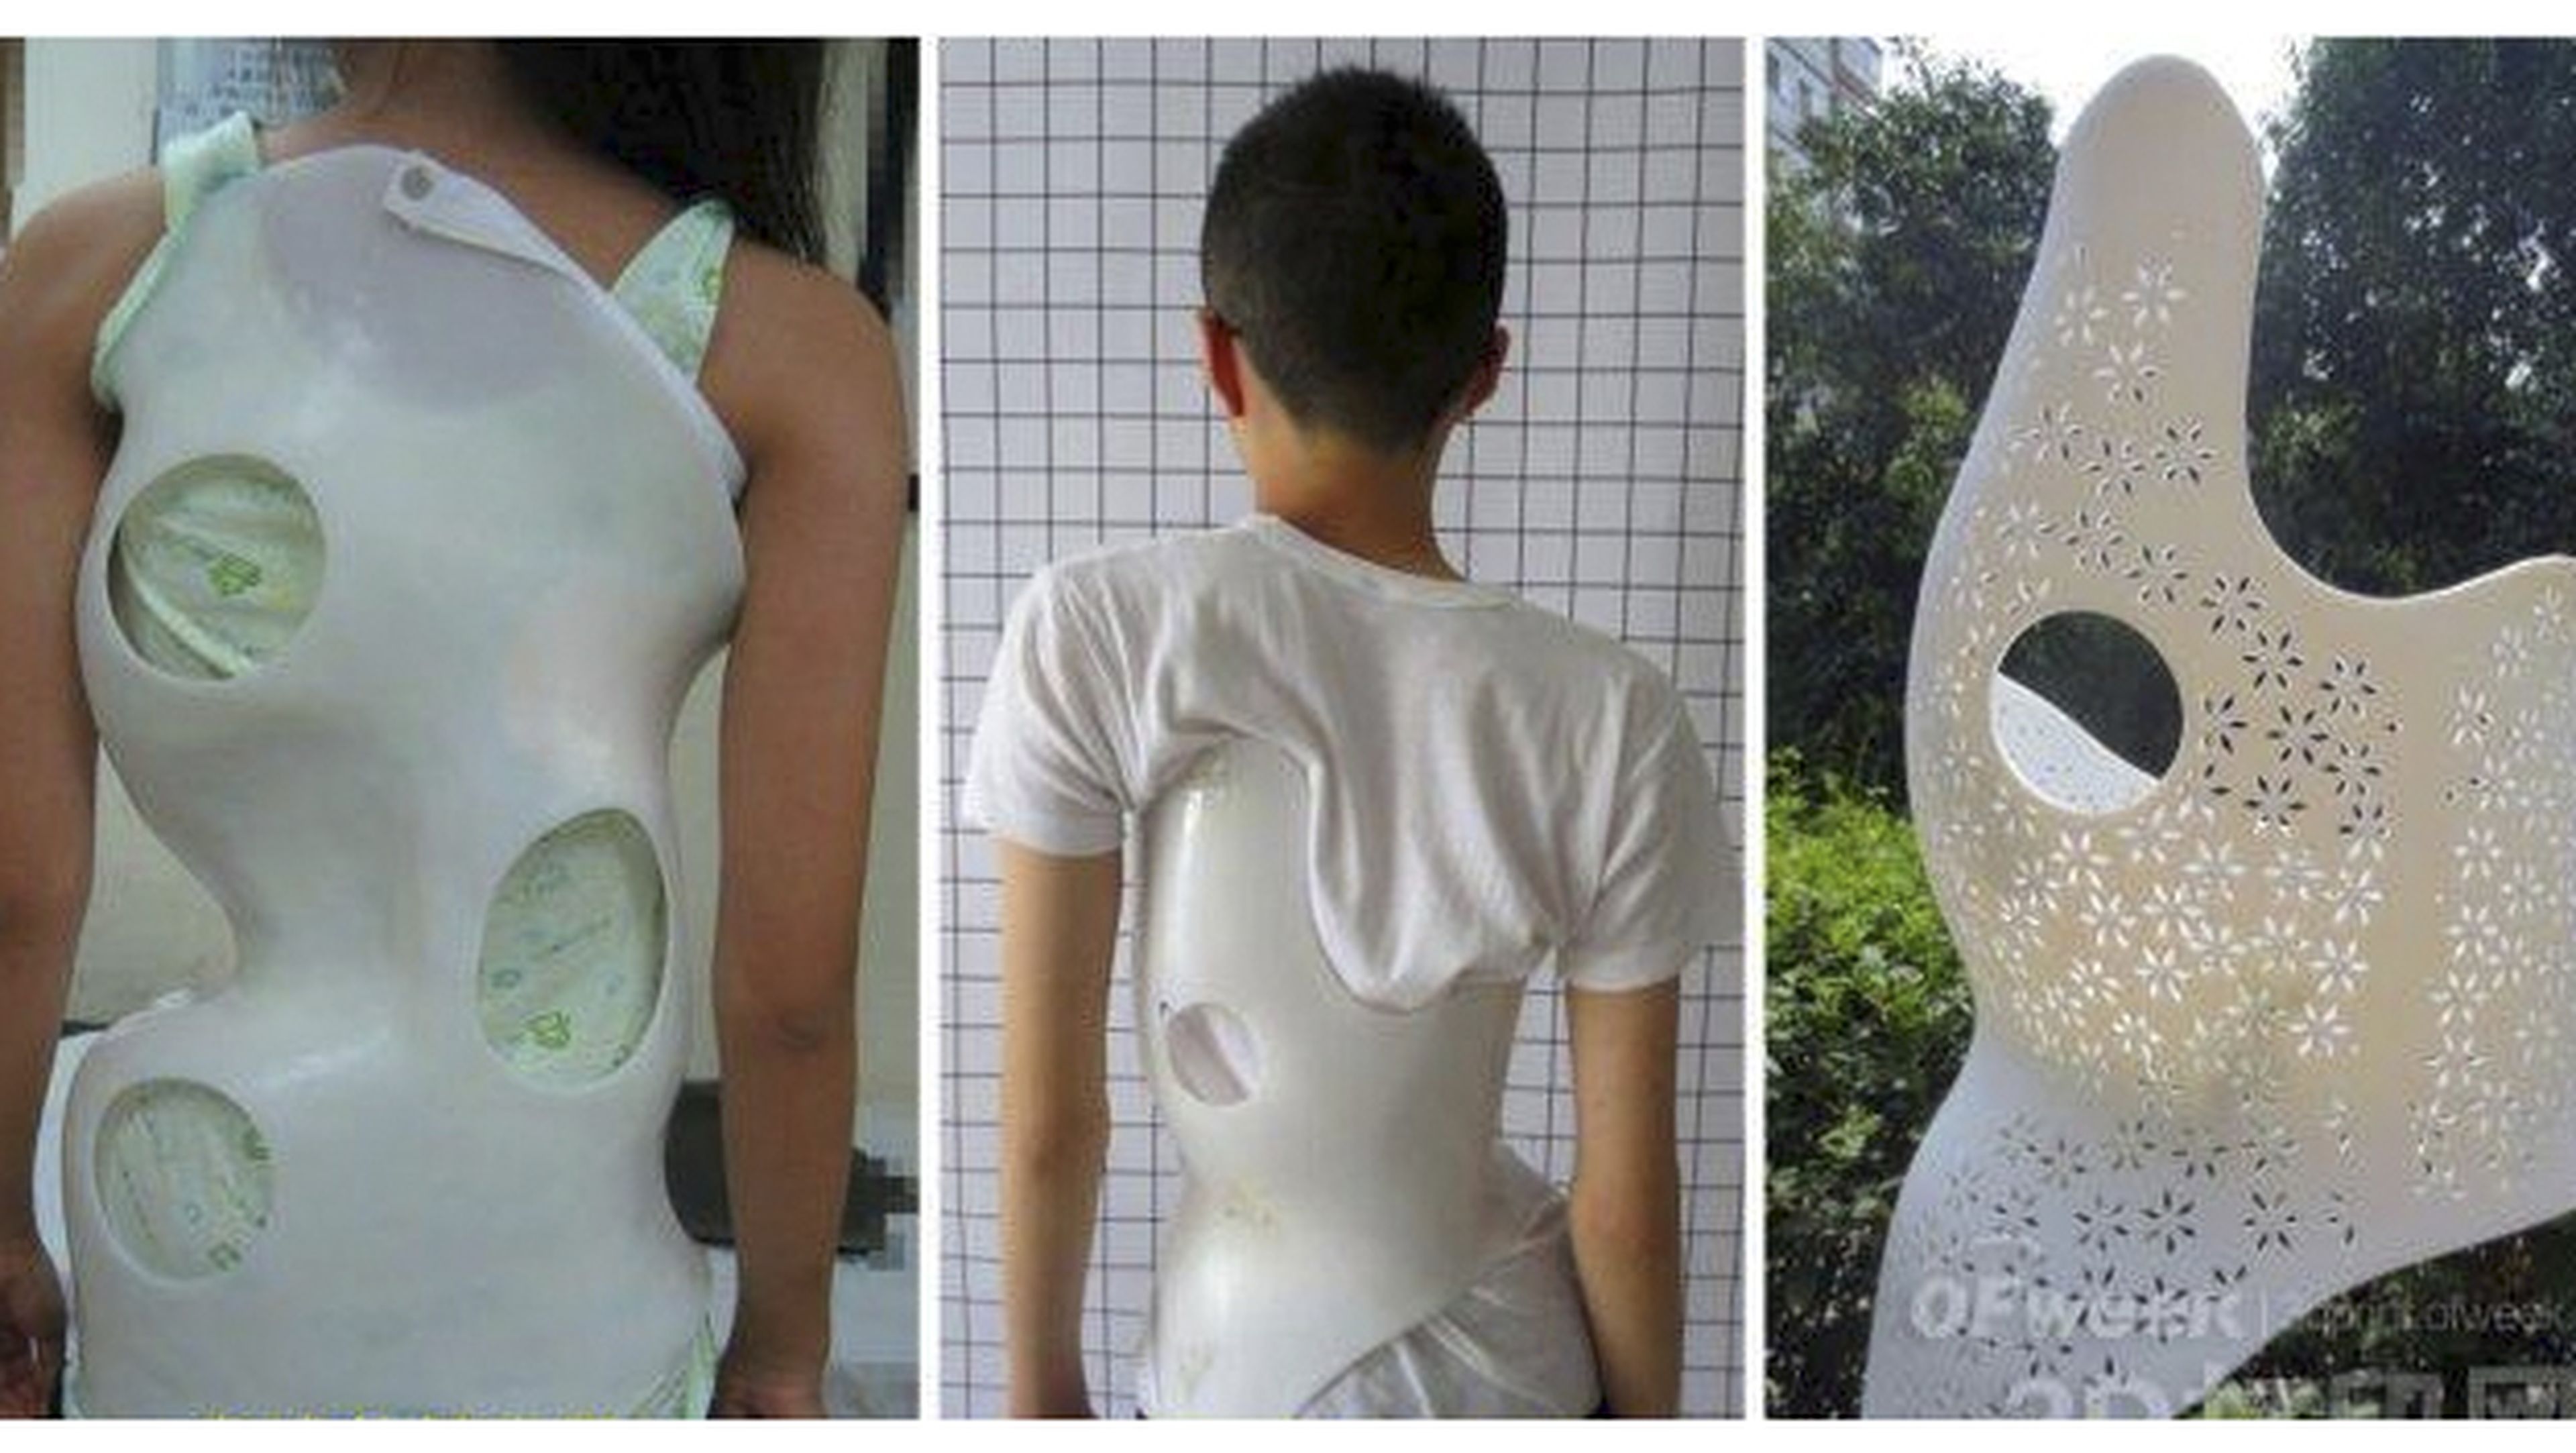 Prótesis impresas en 3D para tratar los problemas de espalda